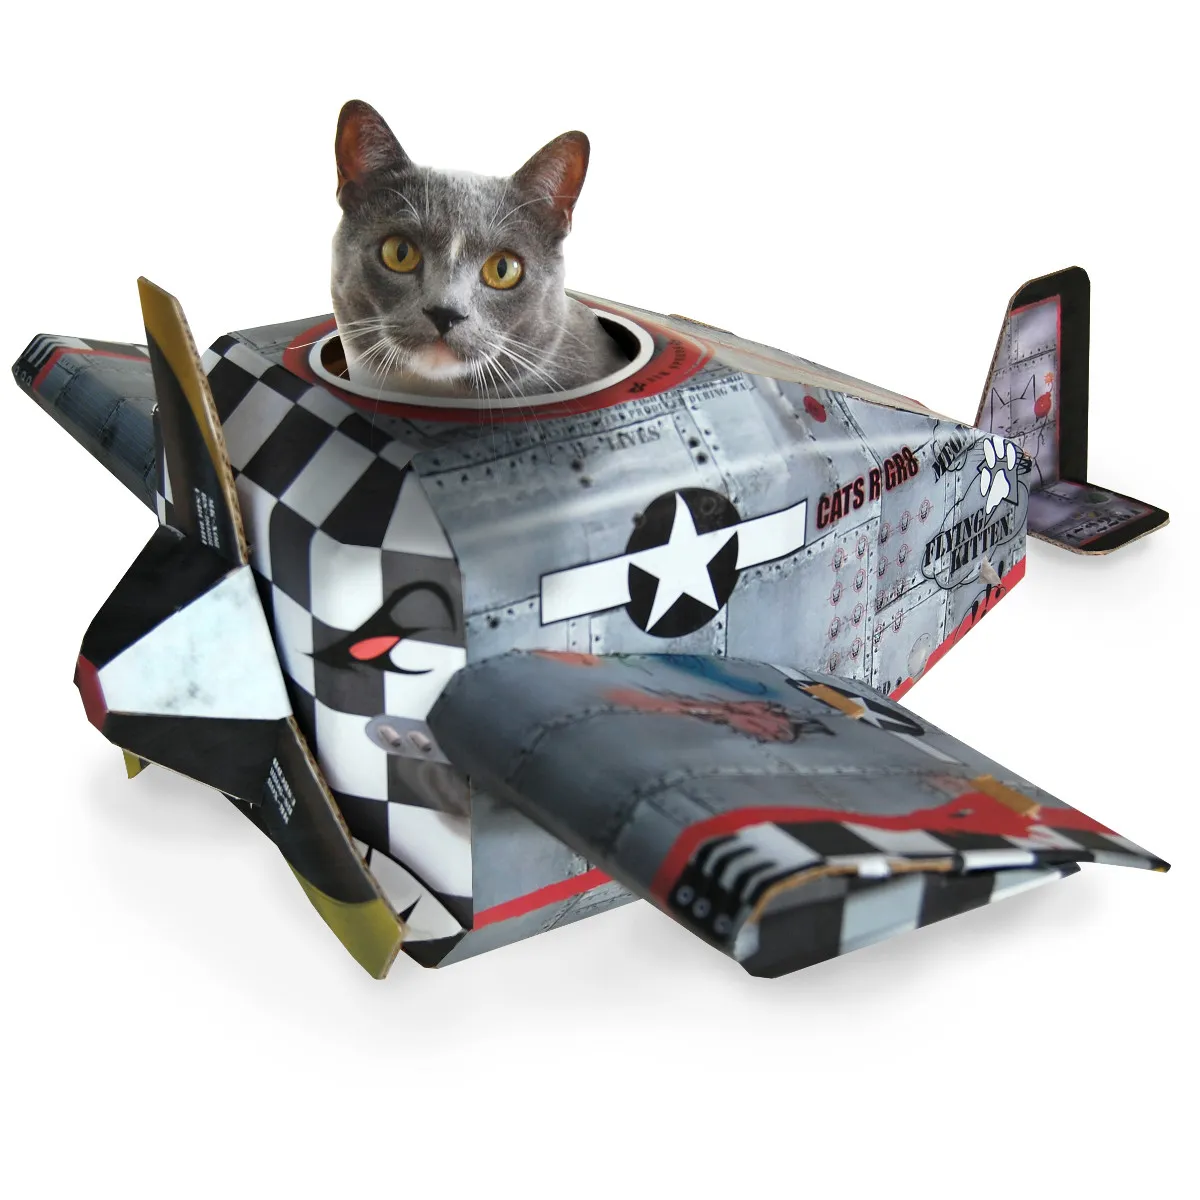 Katzen Play House Flugzeug